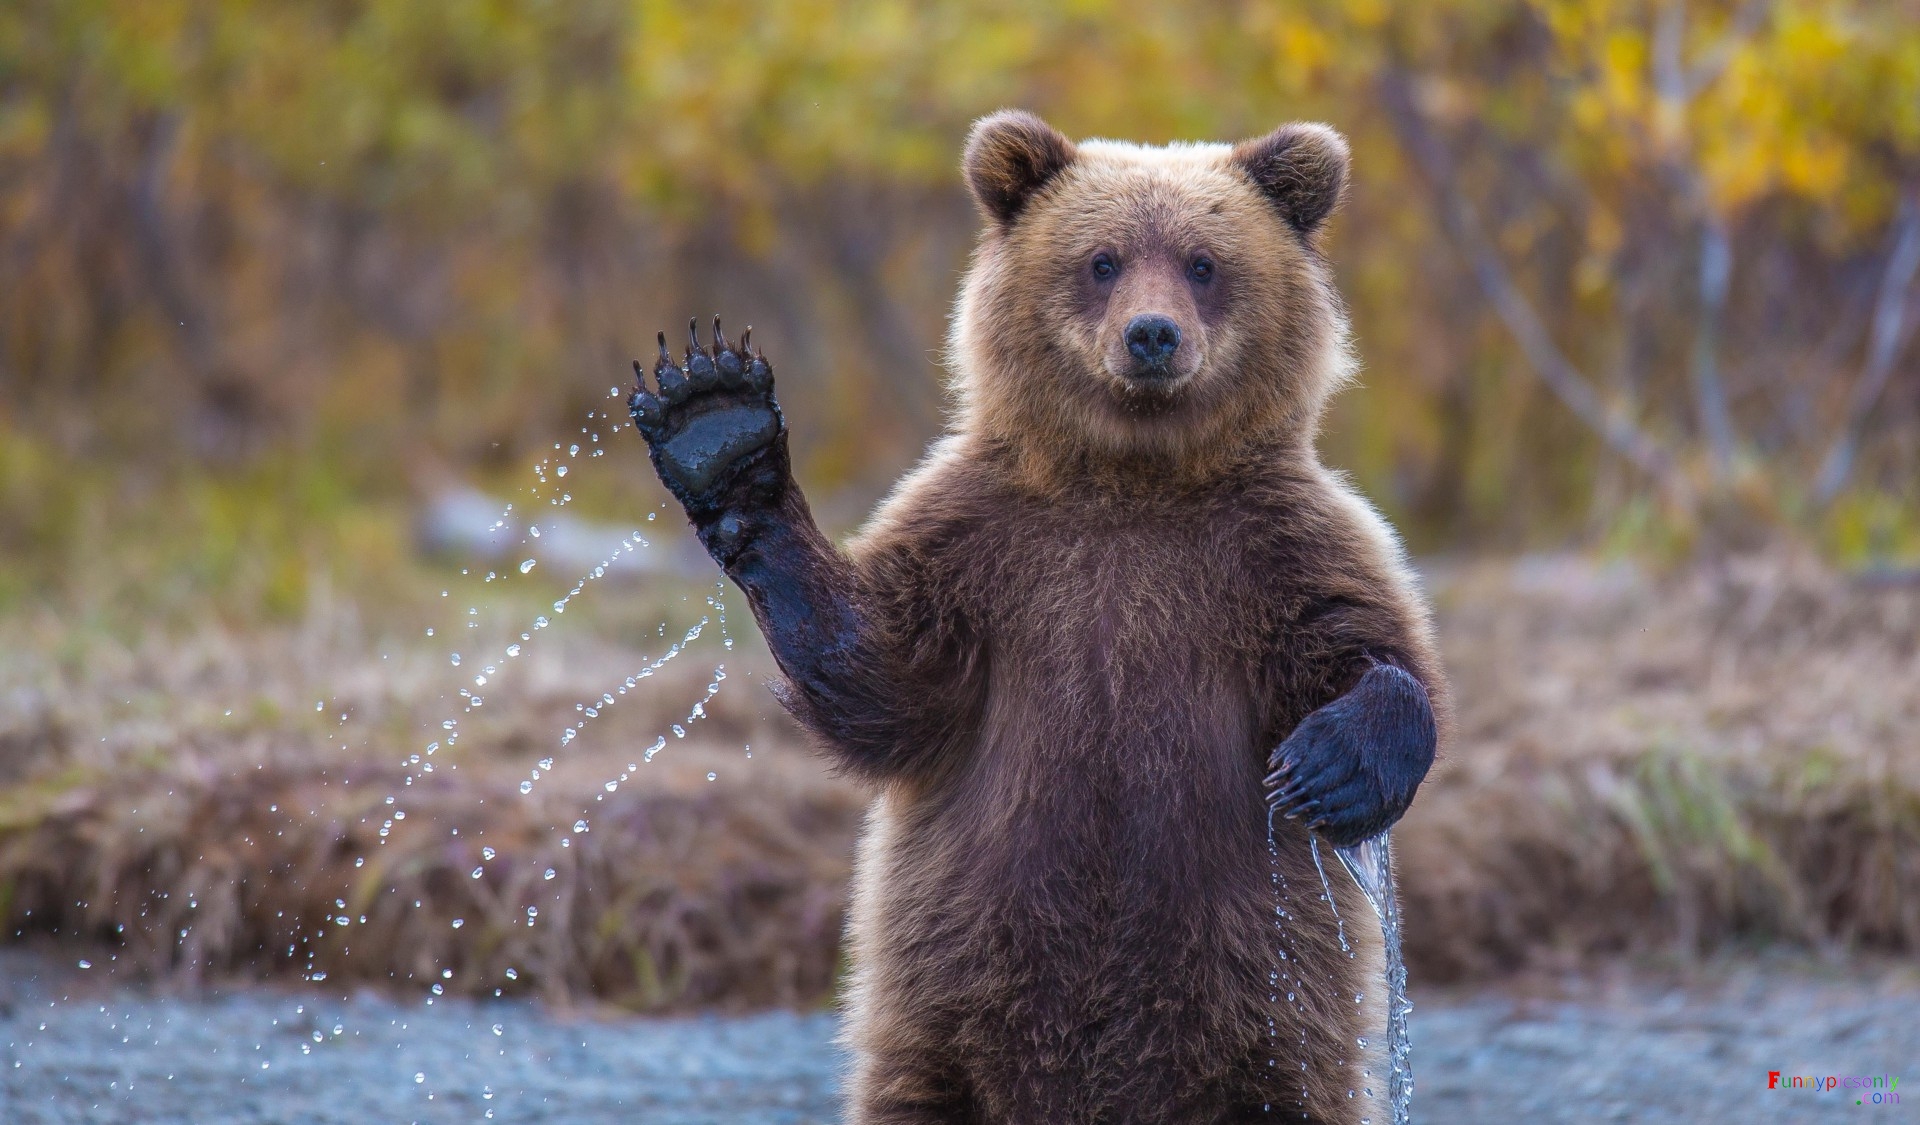 waving bear